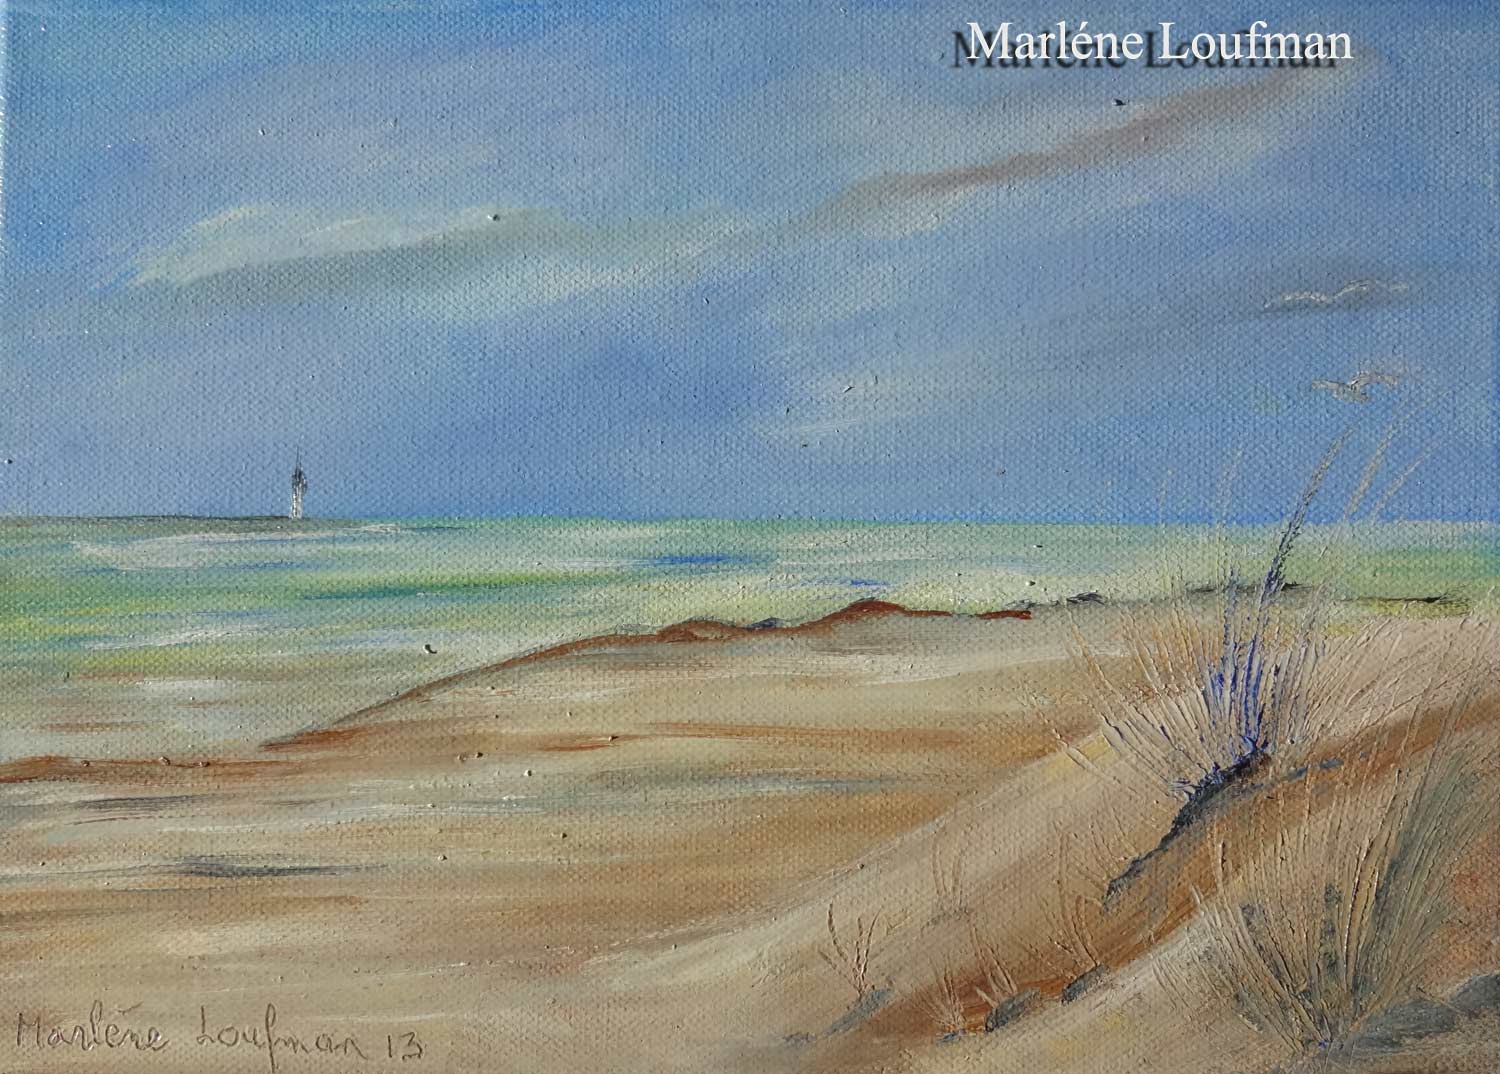 N° 5 - Paysage de mer du Nord avec phare au loin de Loufman Marlène 